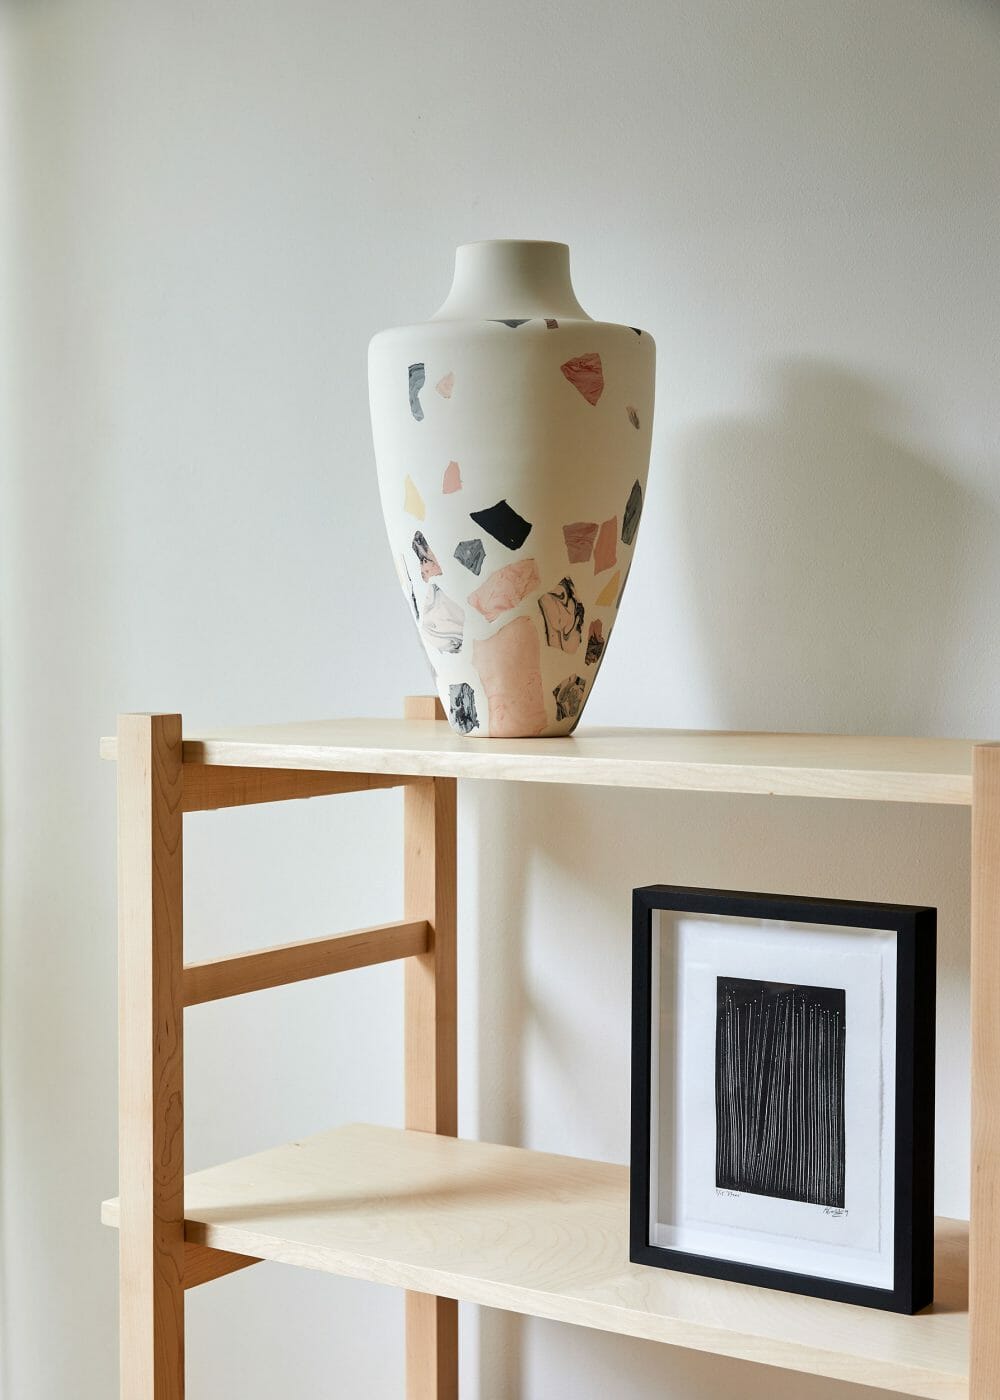 terrazzo-vase-lifestyle-interiors-home-design-ceramics-sculpture-design